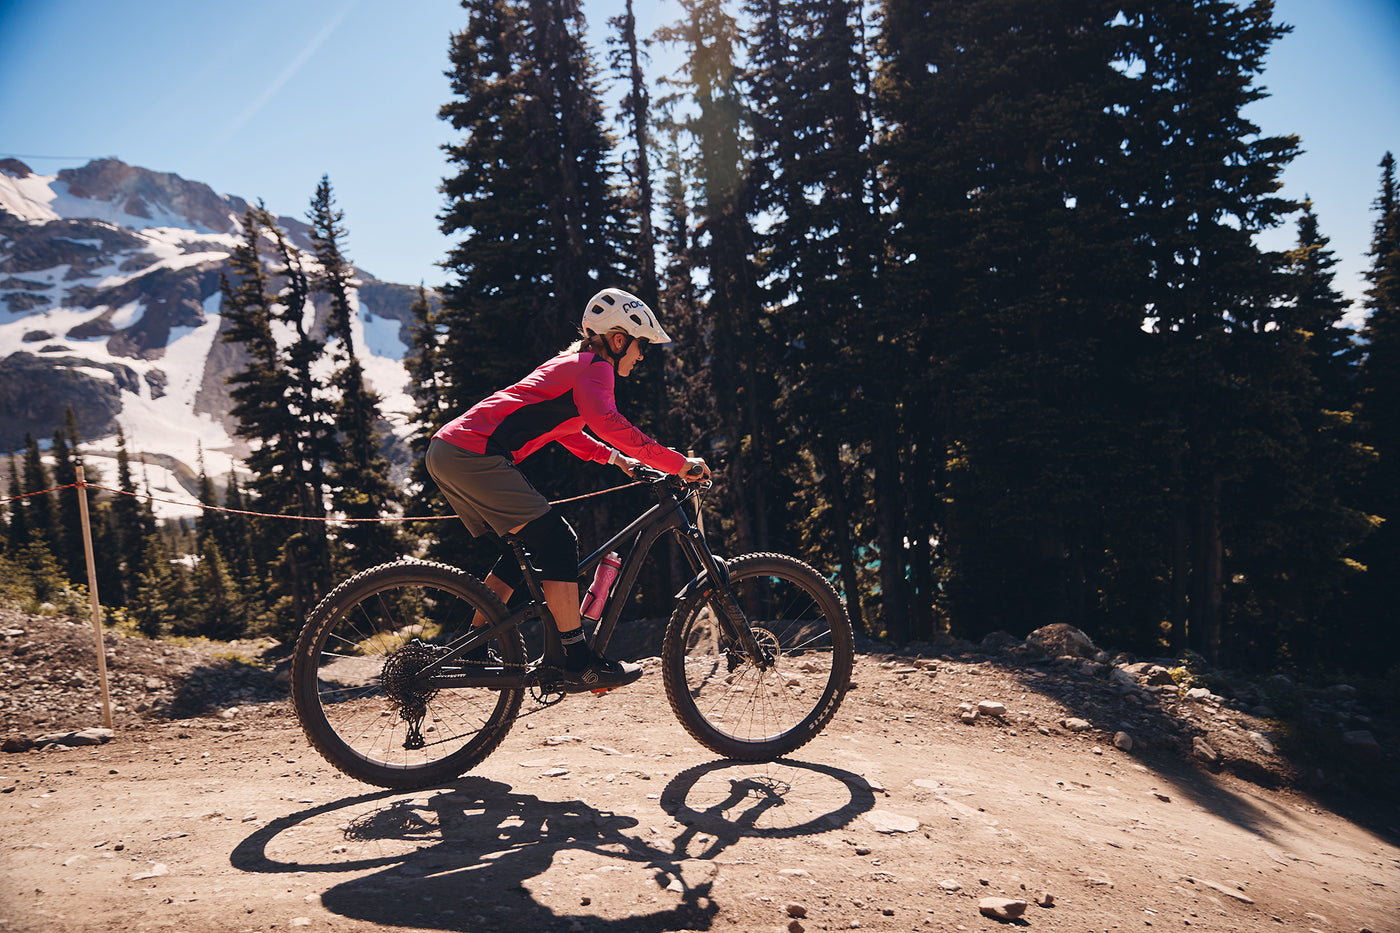 Women's Mountain Biking Shorts Guide